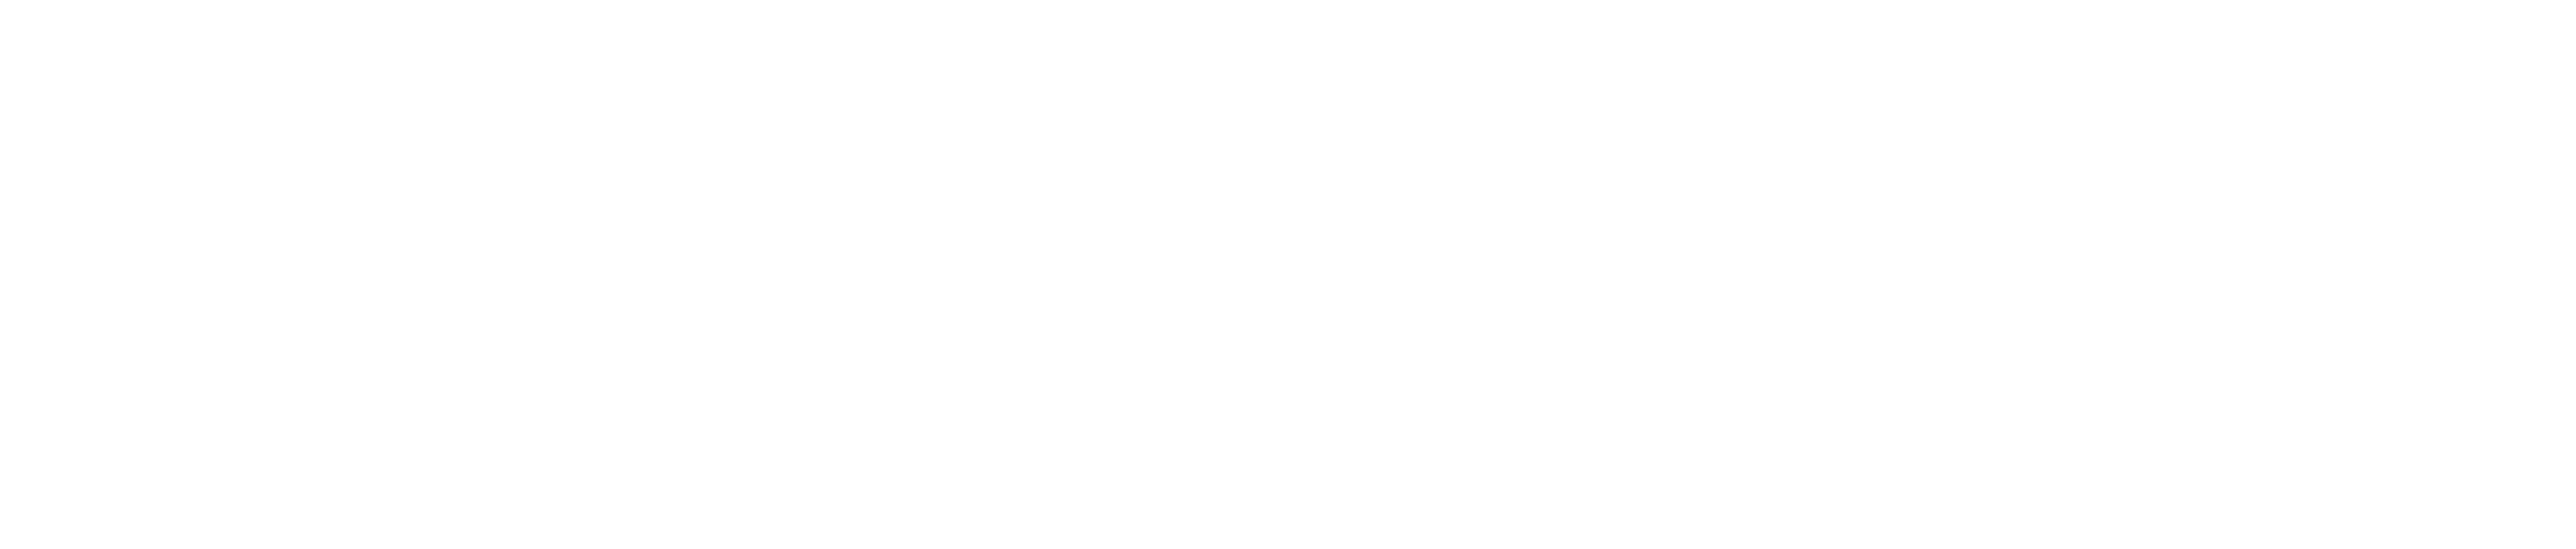 Capxe_footer_logo